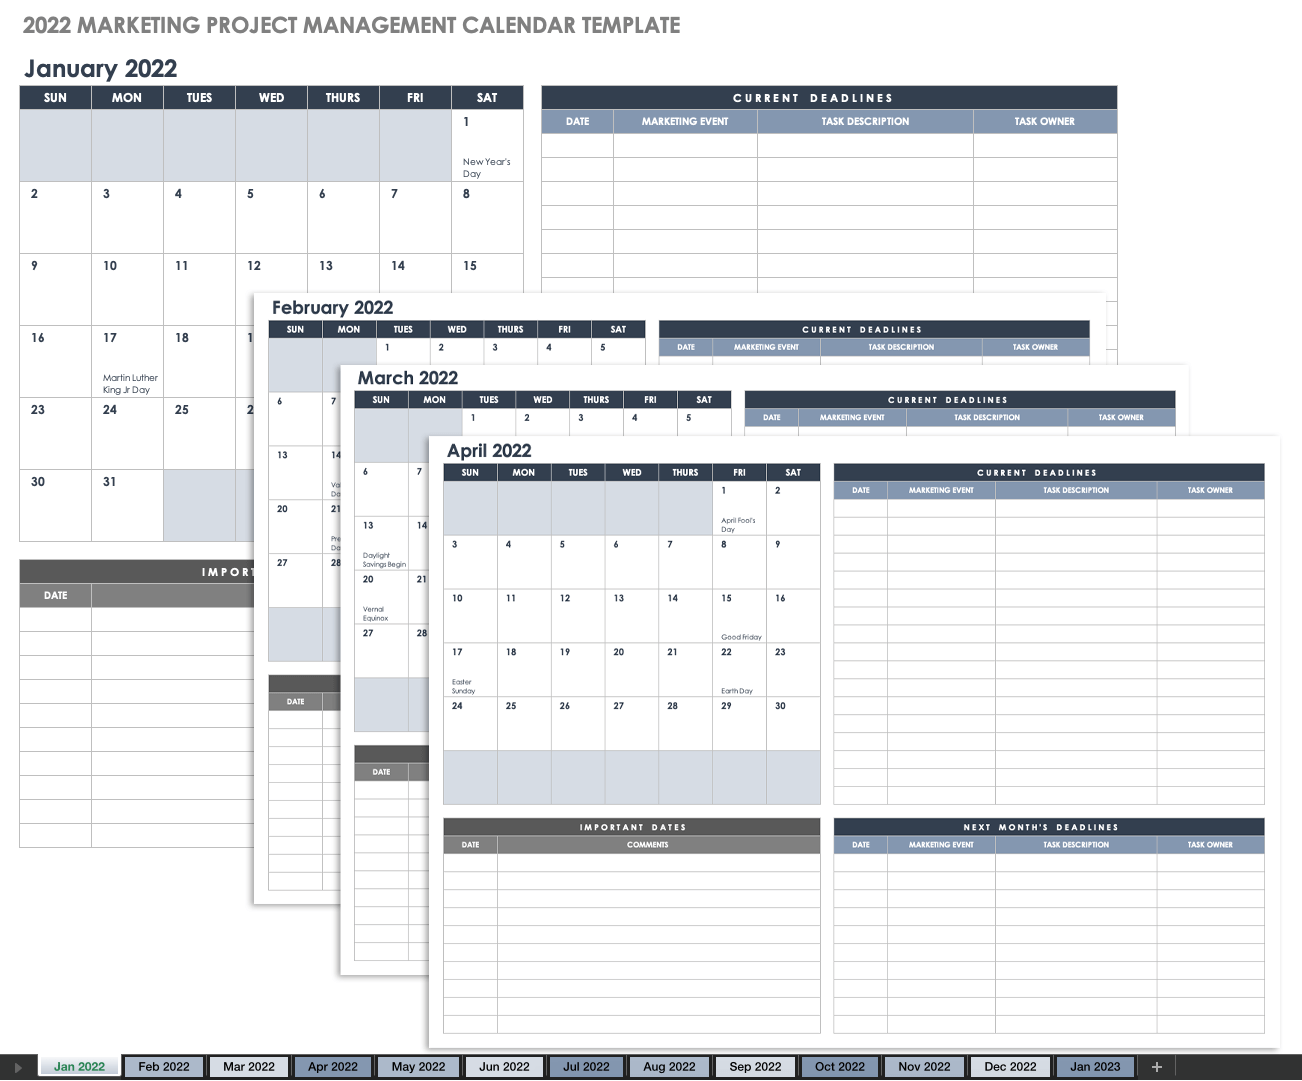 2022 Marketing Project Management Calendar Template